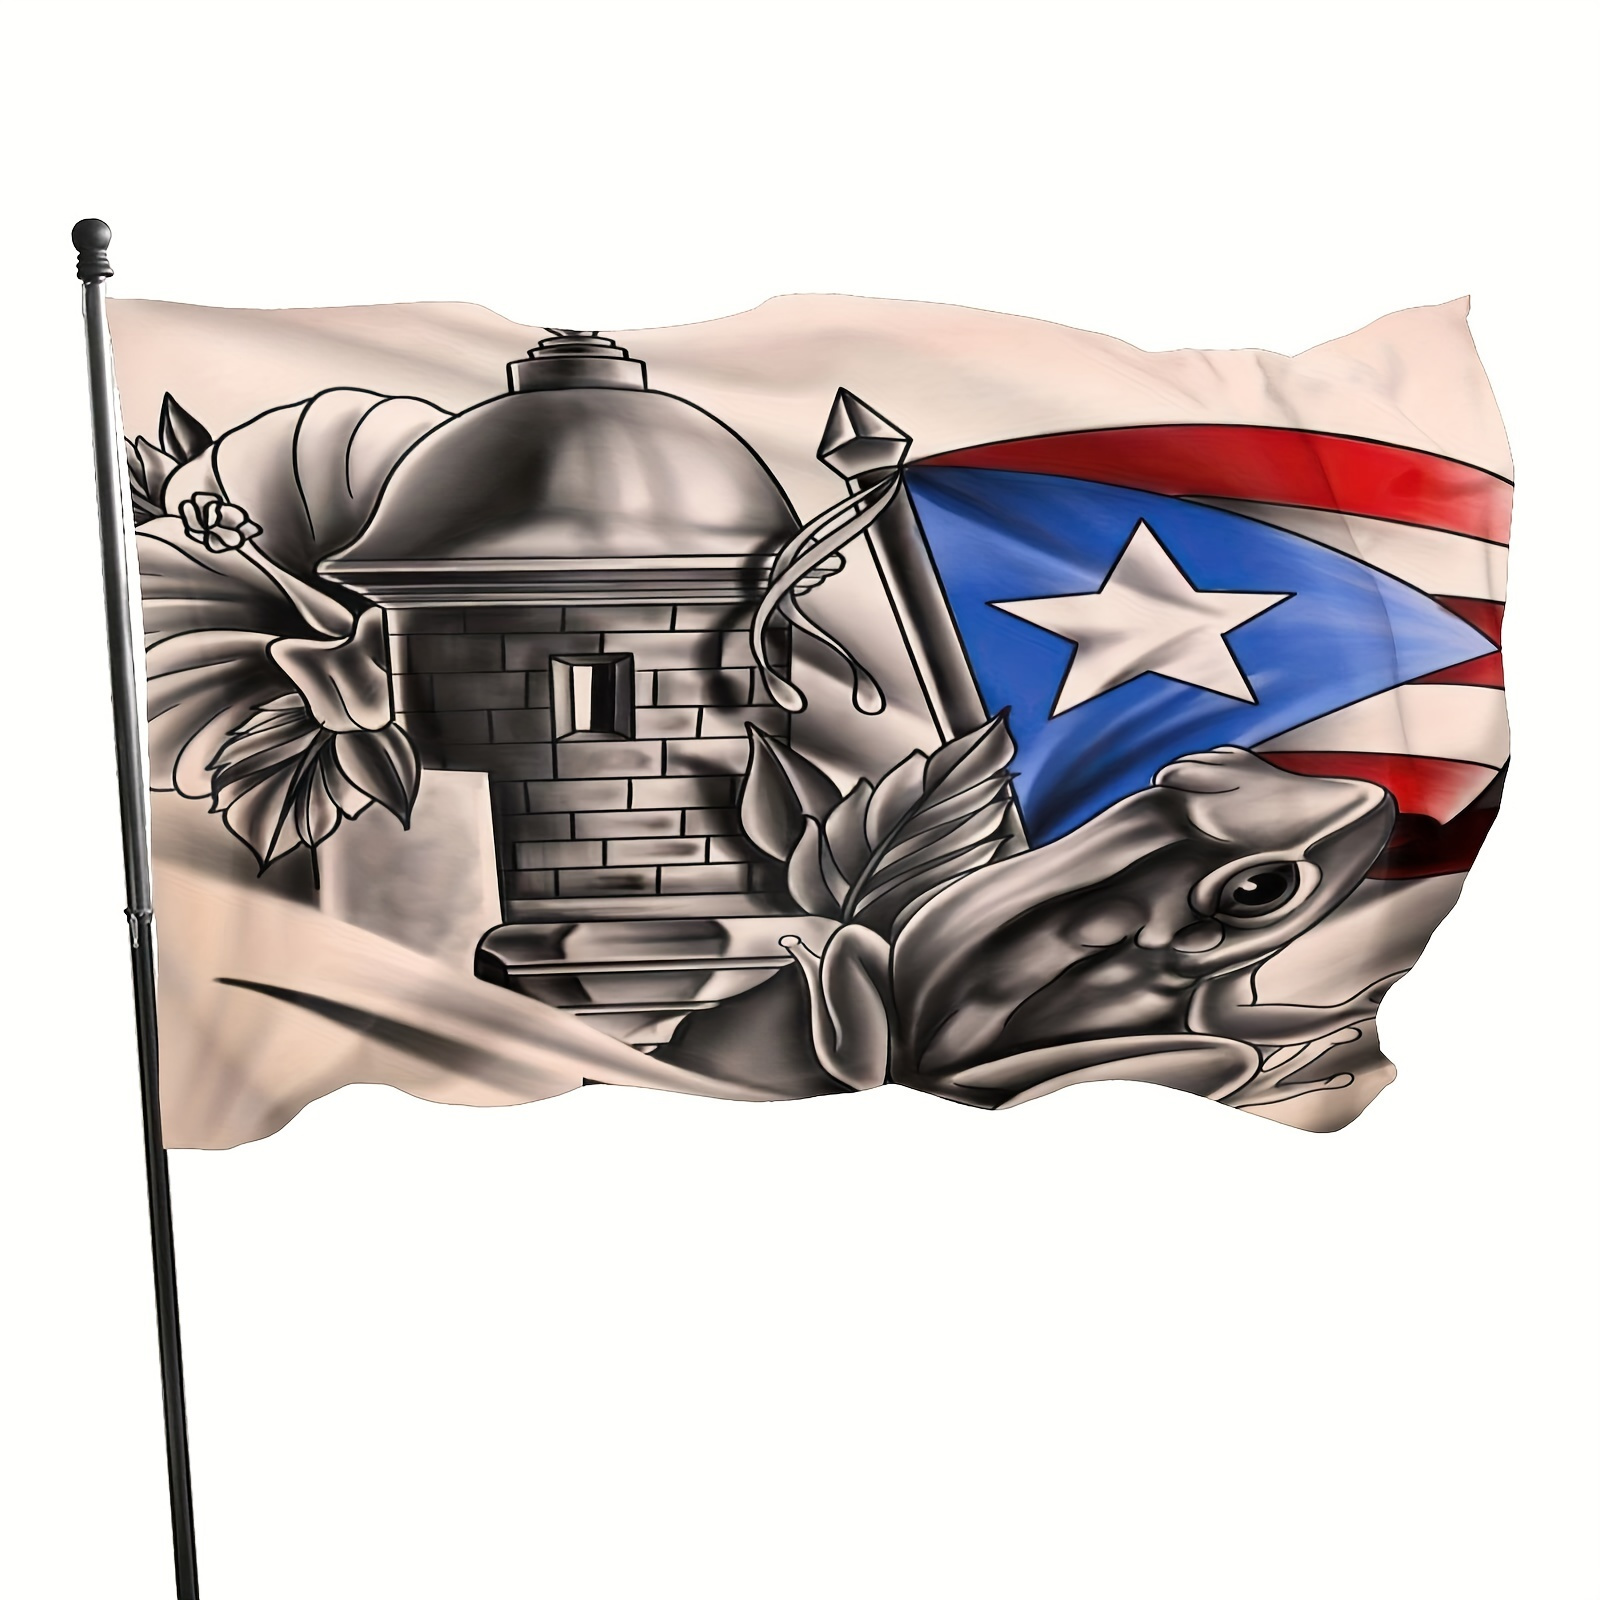 

Puerto Rico Frog National Flag - Durable Polyester Outdoor Garden Decor, 3x5 Ft